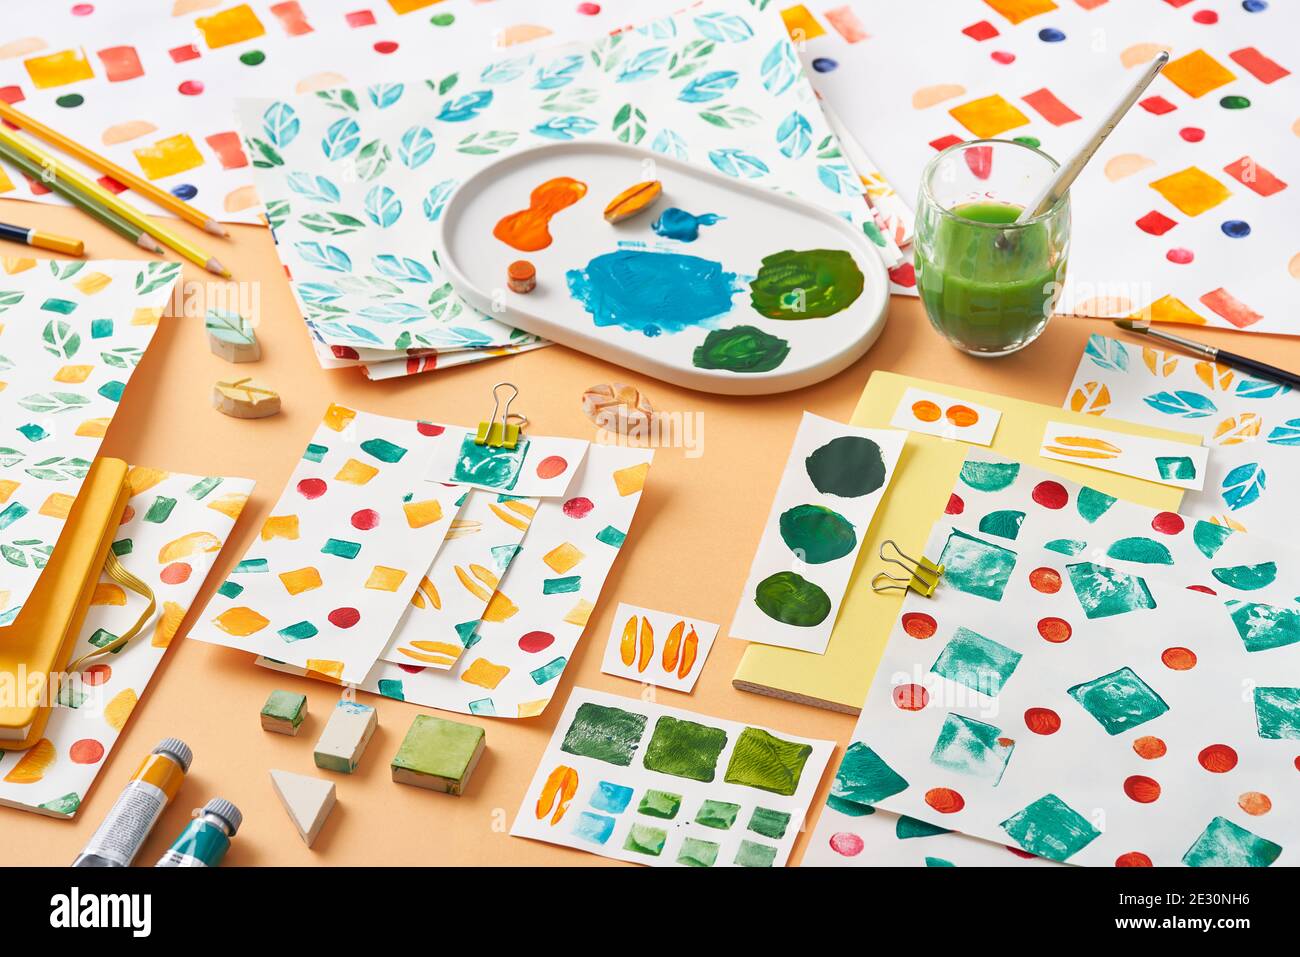 Fogli di carta con vari ornamenti geometrici e campioni posti vicino agli strumenti di tavolozza e pittura su sfondo arancione Foto Stock